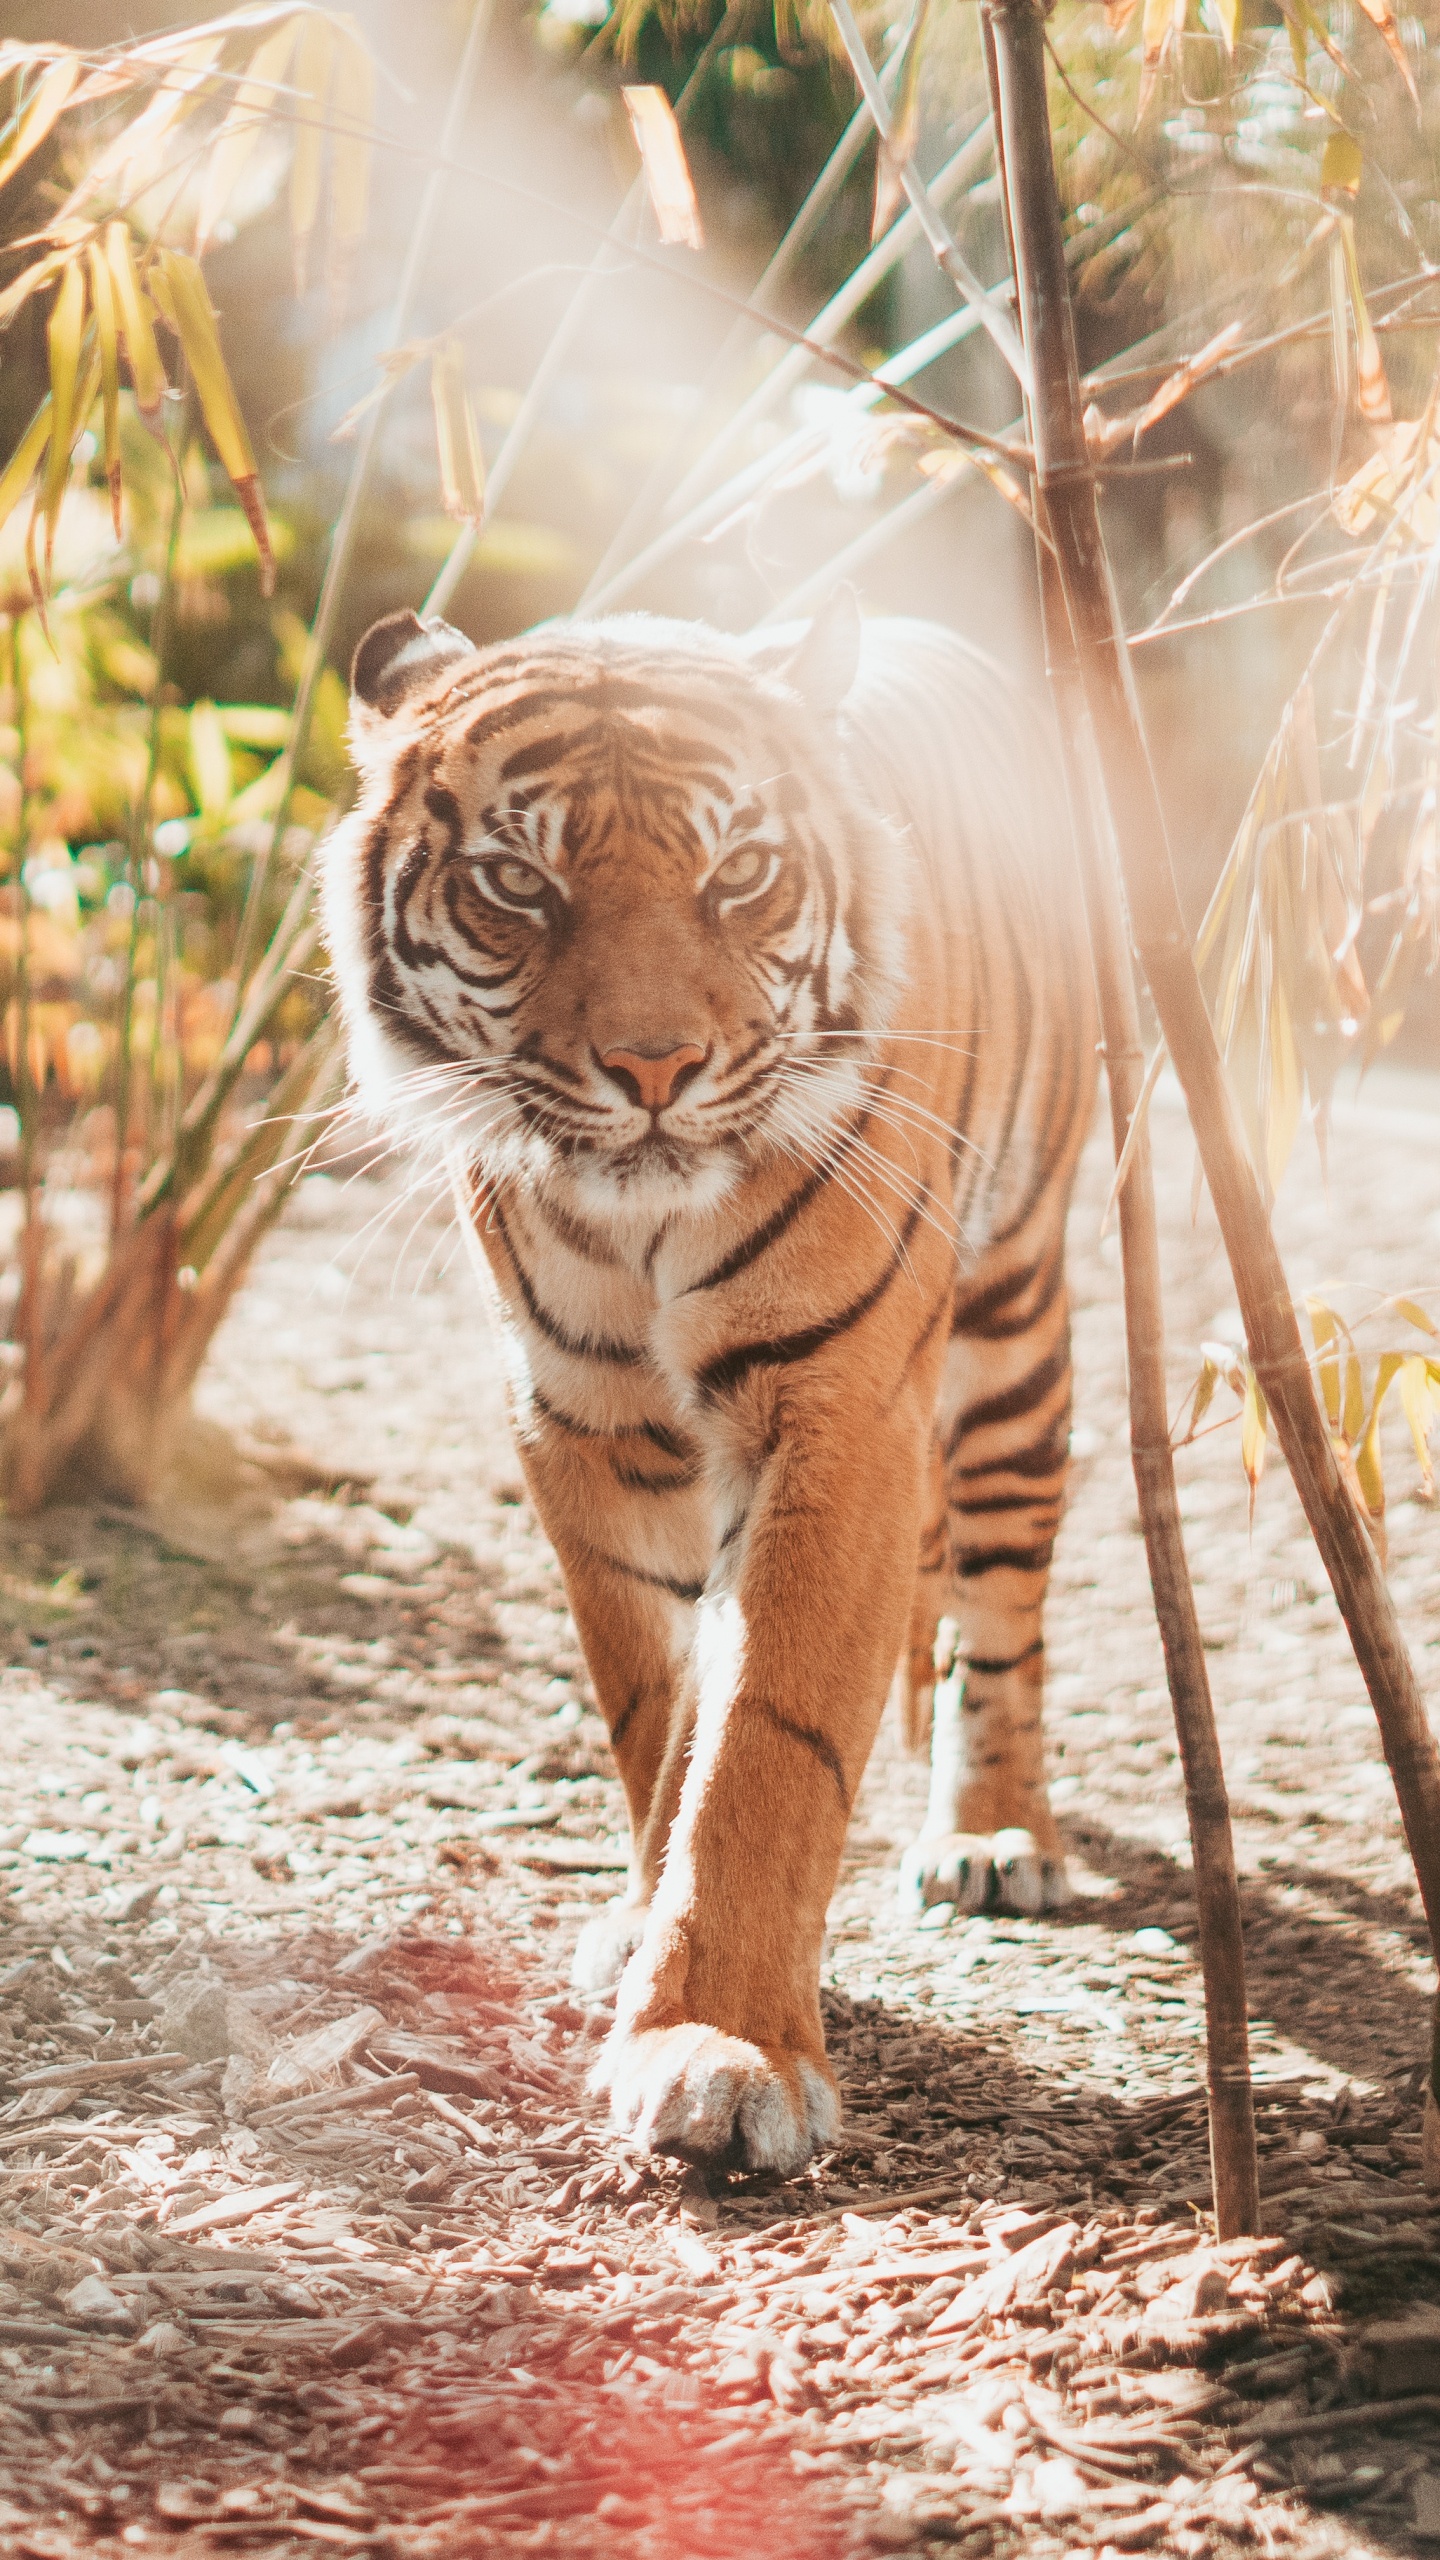 老虎, 孟加拉虎, 野生动物, 陆地动物, 猫科 壁纸 1440x2560 允许